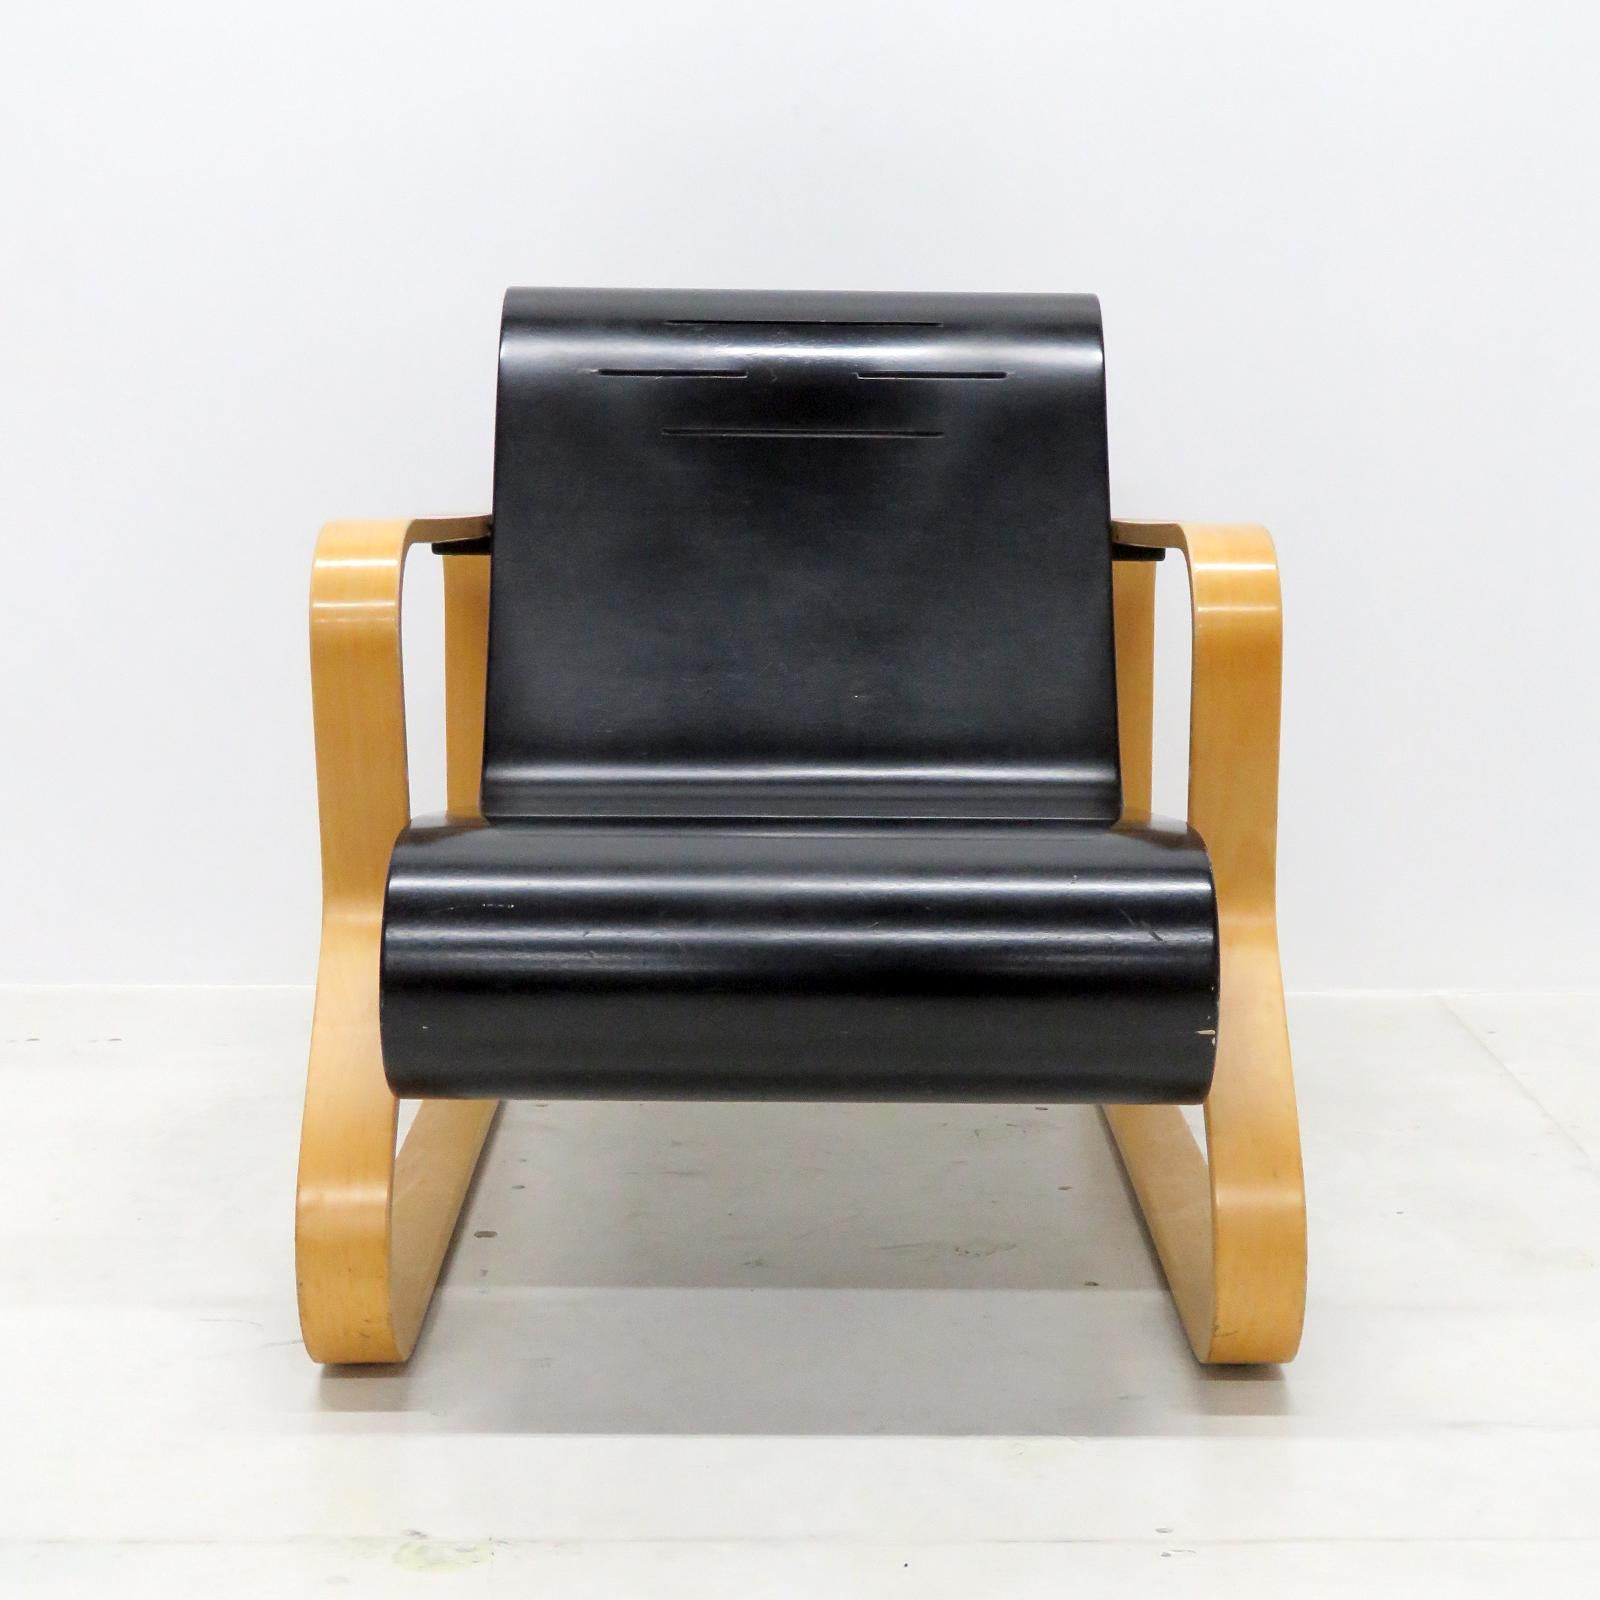 Atemberaubender Paimio-Sessel 41 von Alvar Alto für Artek, Finnland, aus natürlichem Birkenholz mit schwarzem Bugholzsitz mit Lüftungsschlitzen. Der Rahmen aus laminierter Birke ist in eine geschlossene Kurve gebogen und hat Querstreben aus massiver